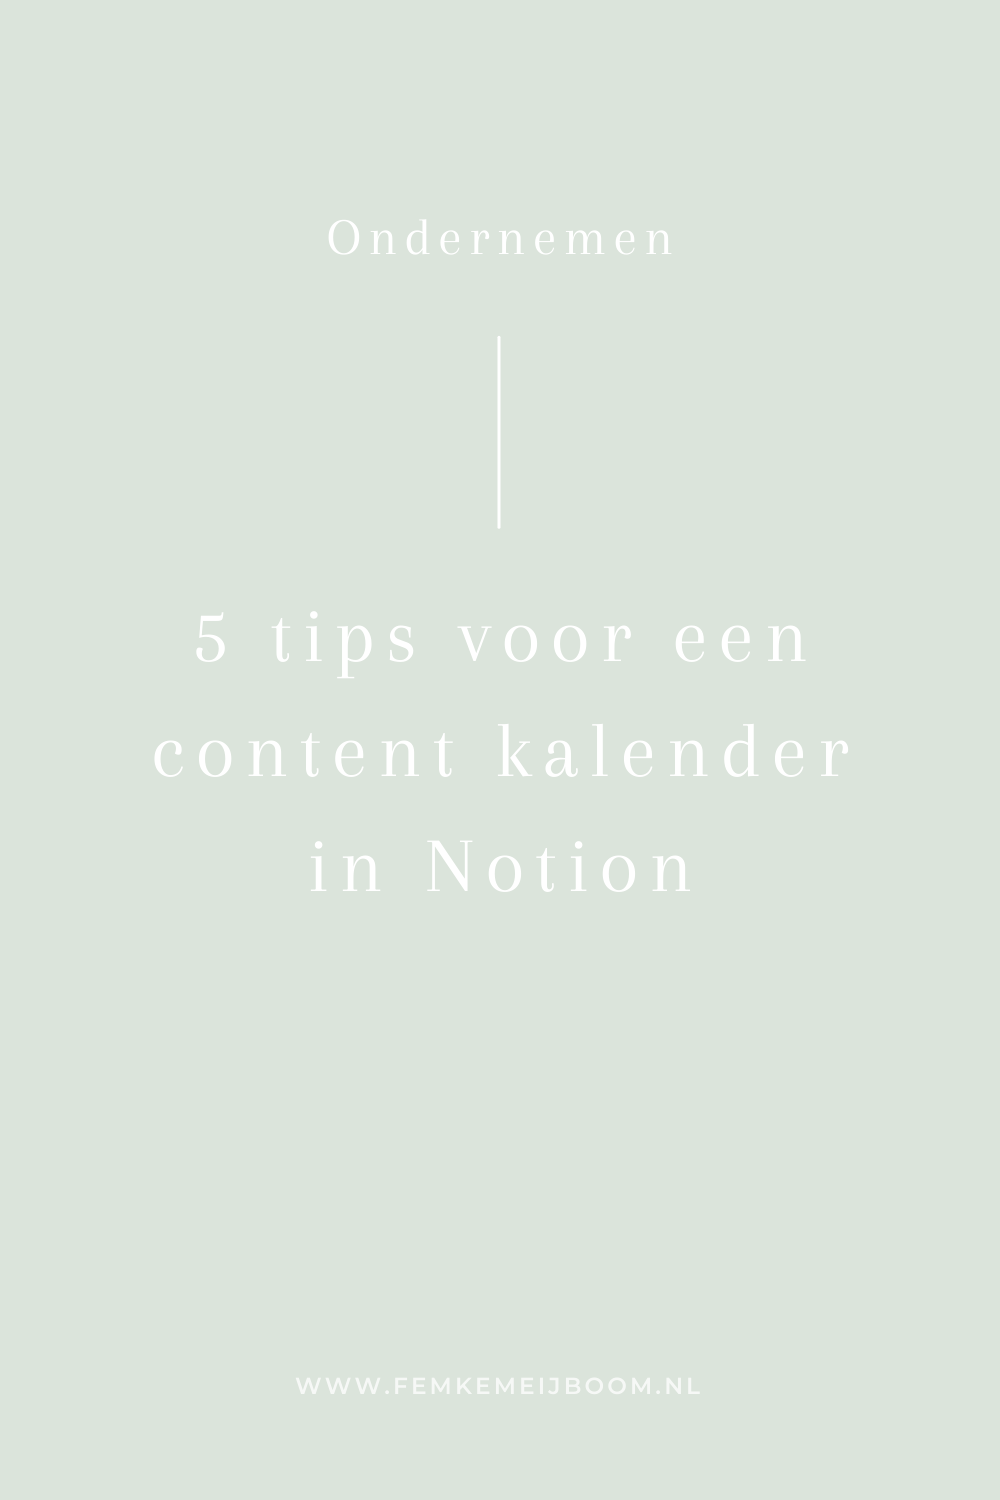 5 Tips voor een content kalender in Notion